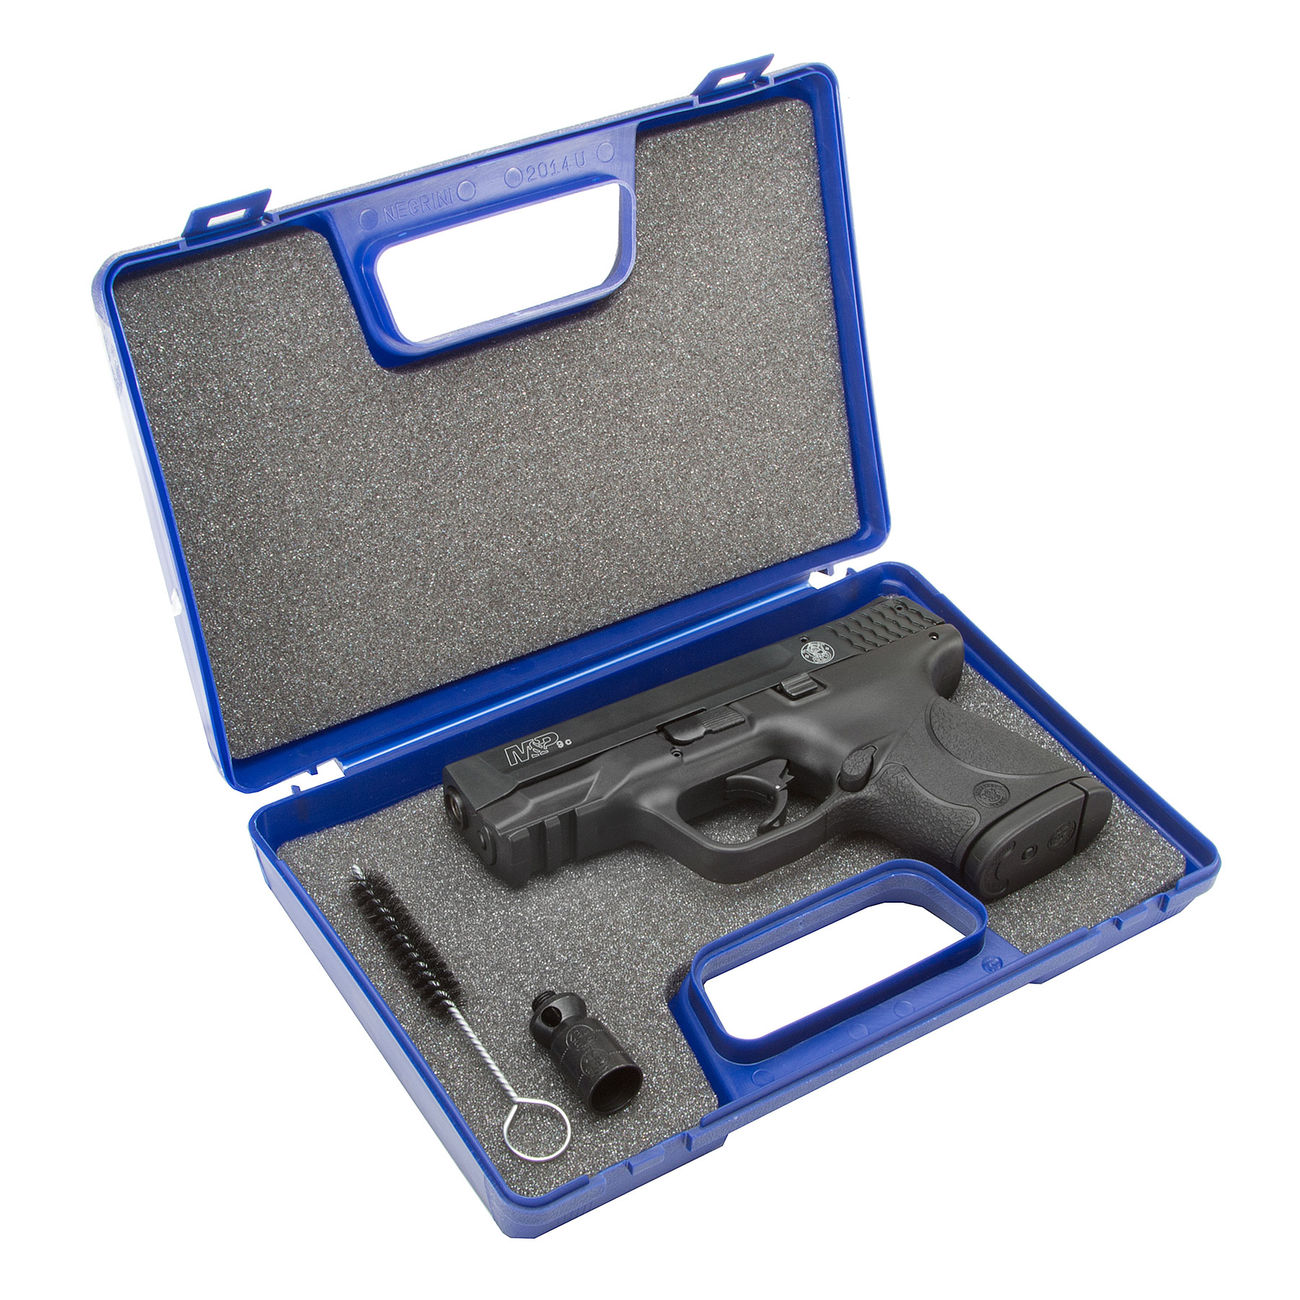 Smith & Wesson M&P 9C Schreckschusspistole Kal. 9mm P.A.K. inkl. 2 Magazinen Bild 1